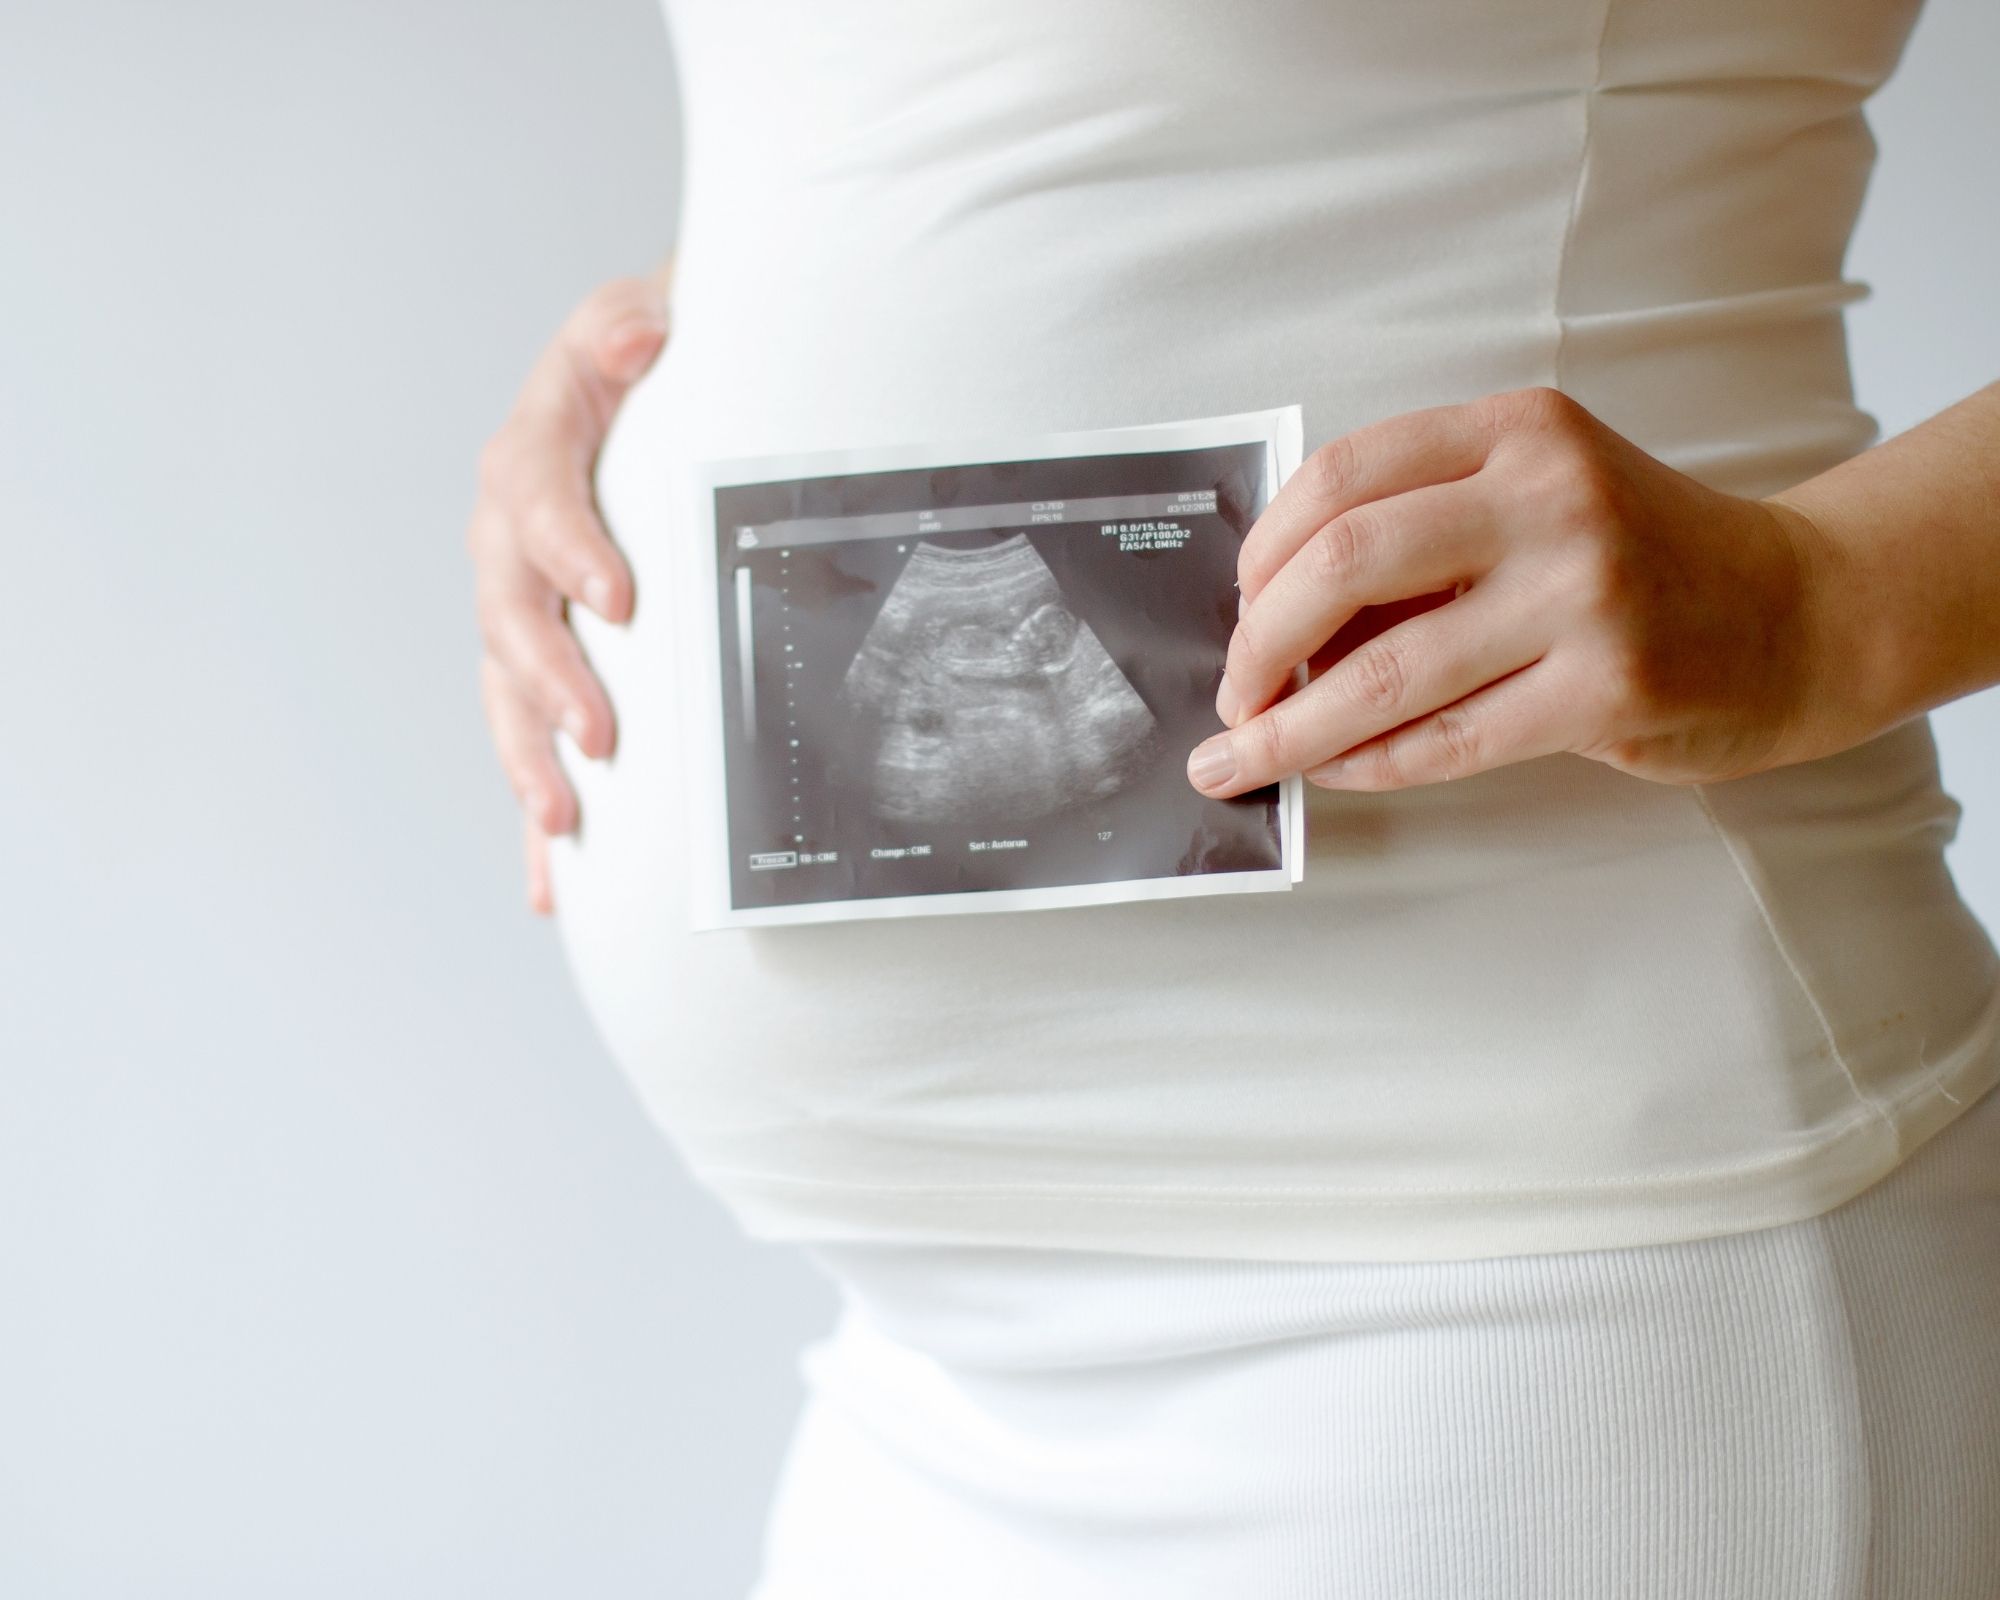 الإفرازات البيضاء للحامل ونوع الجنين